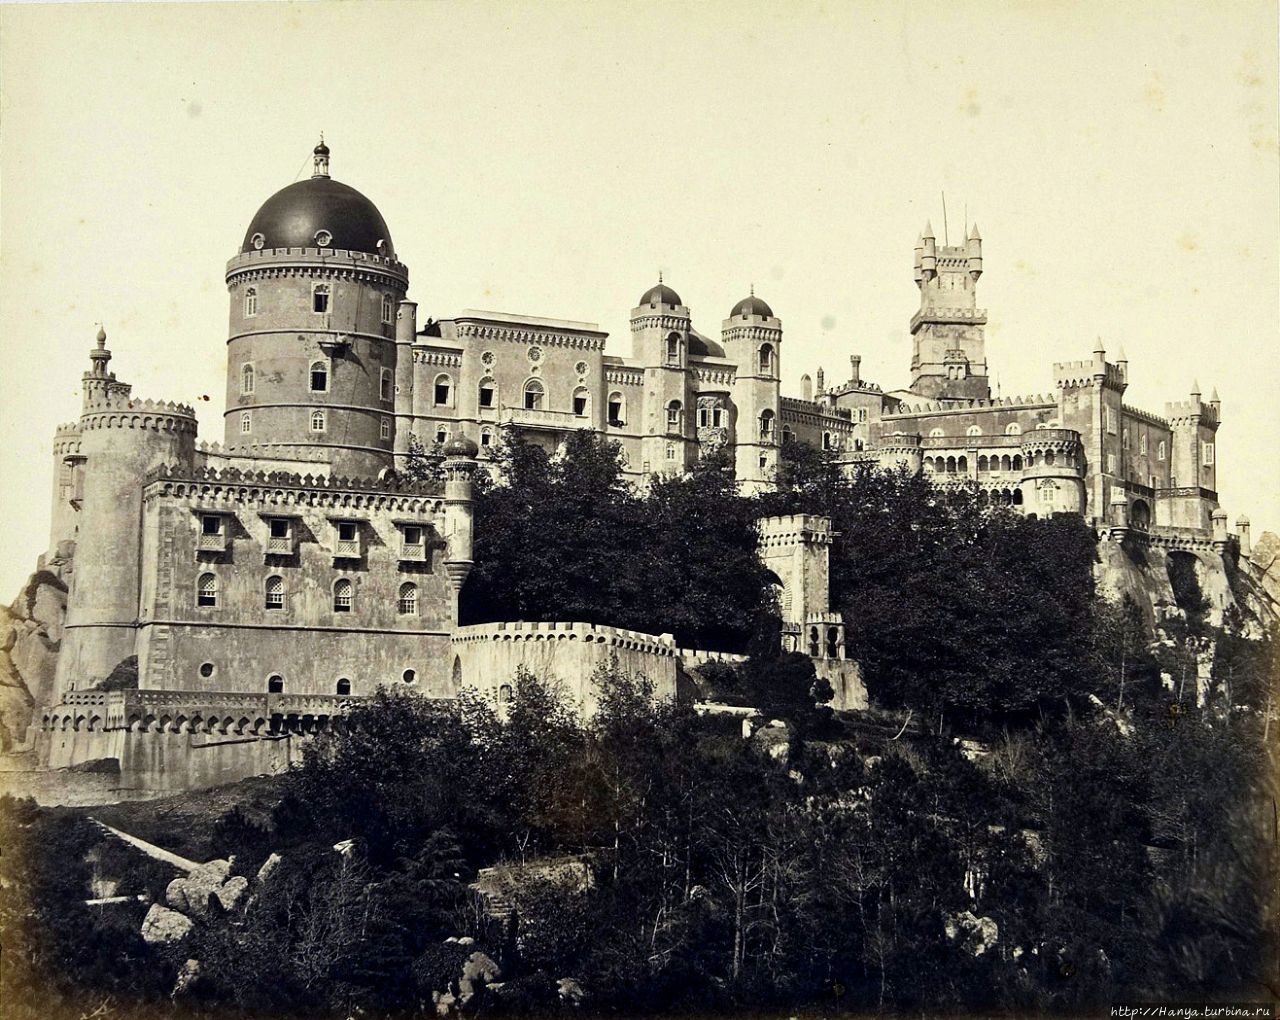 Фото 1868 г. Из интернета Синтра, Португалия